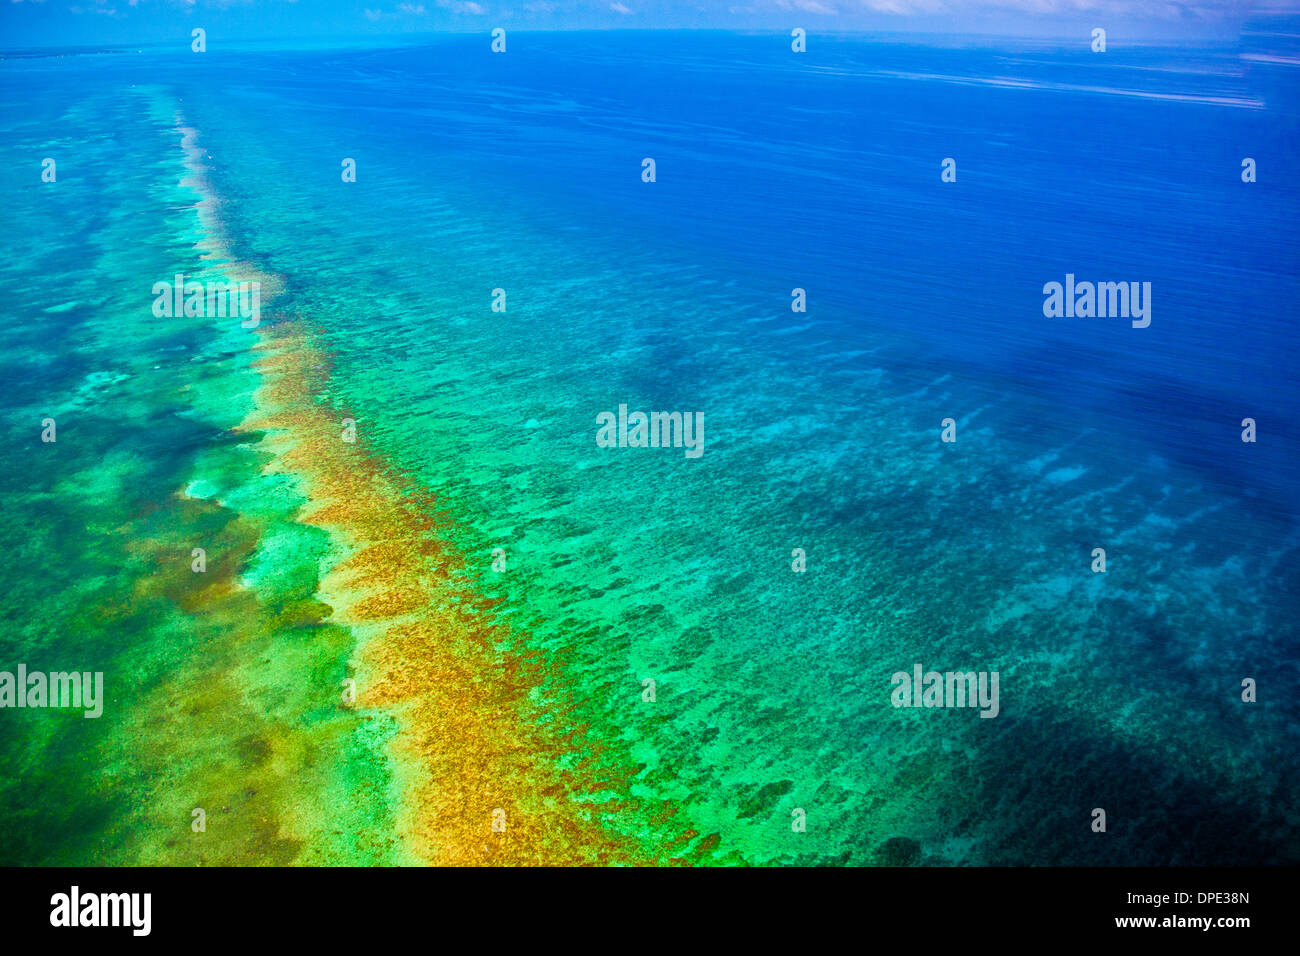 Détail du récif méso-américain de la mer des Caraïbes Belize Reef Réserver Lighthouse Reef Atoll vue aérienne Banque D'Images